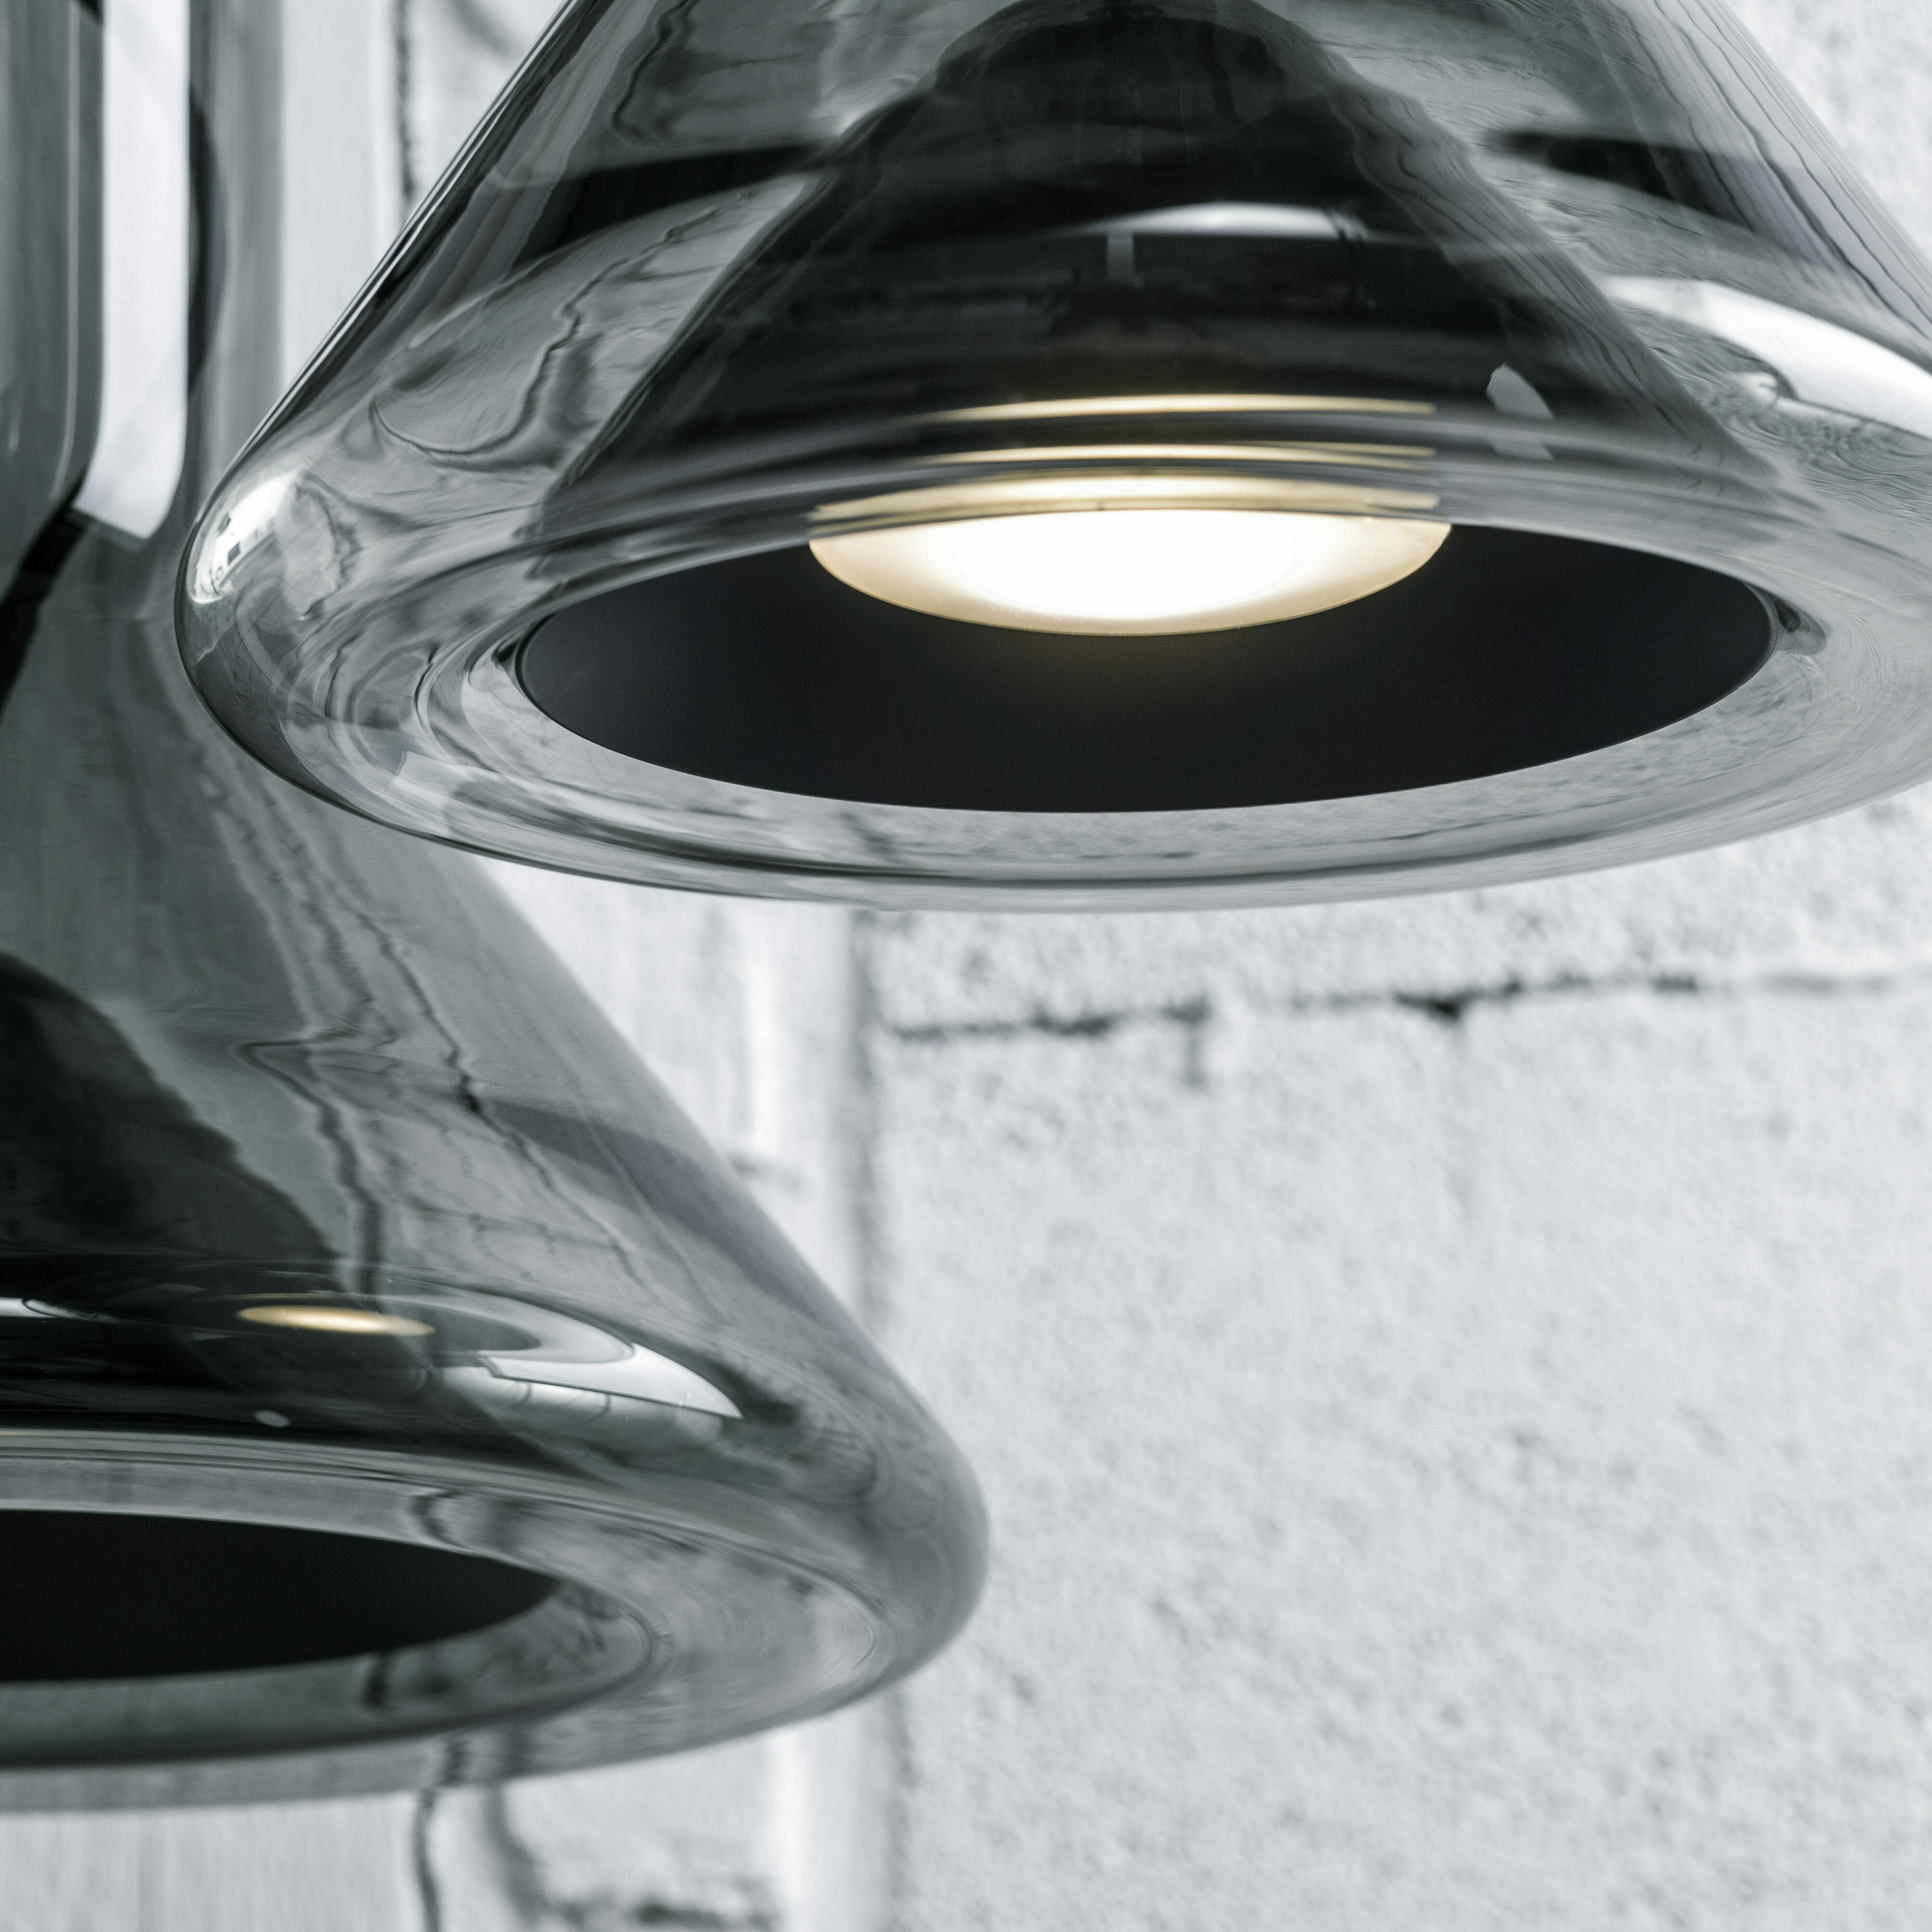 whistle lucie koldova for brokis deckenlampe lampe schwarz detailansicht design inneneinrichtung einrichtungsidee